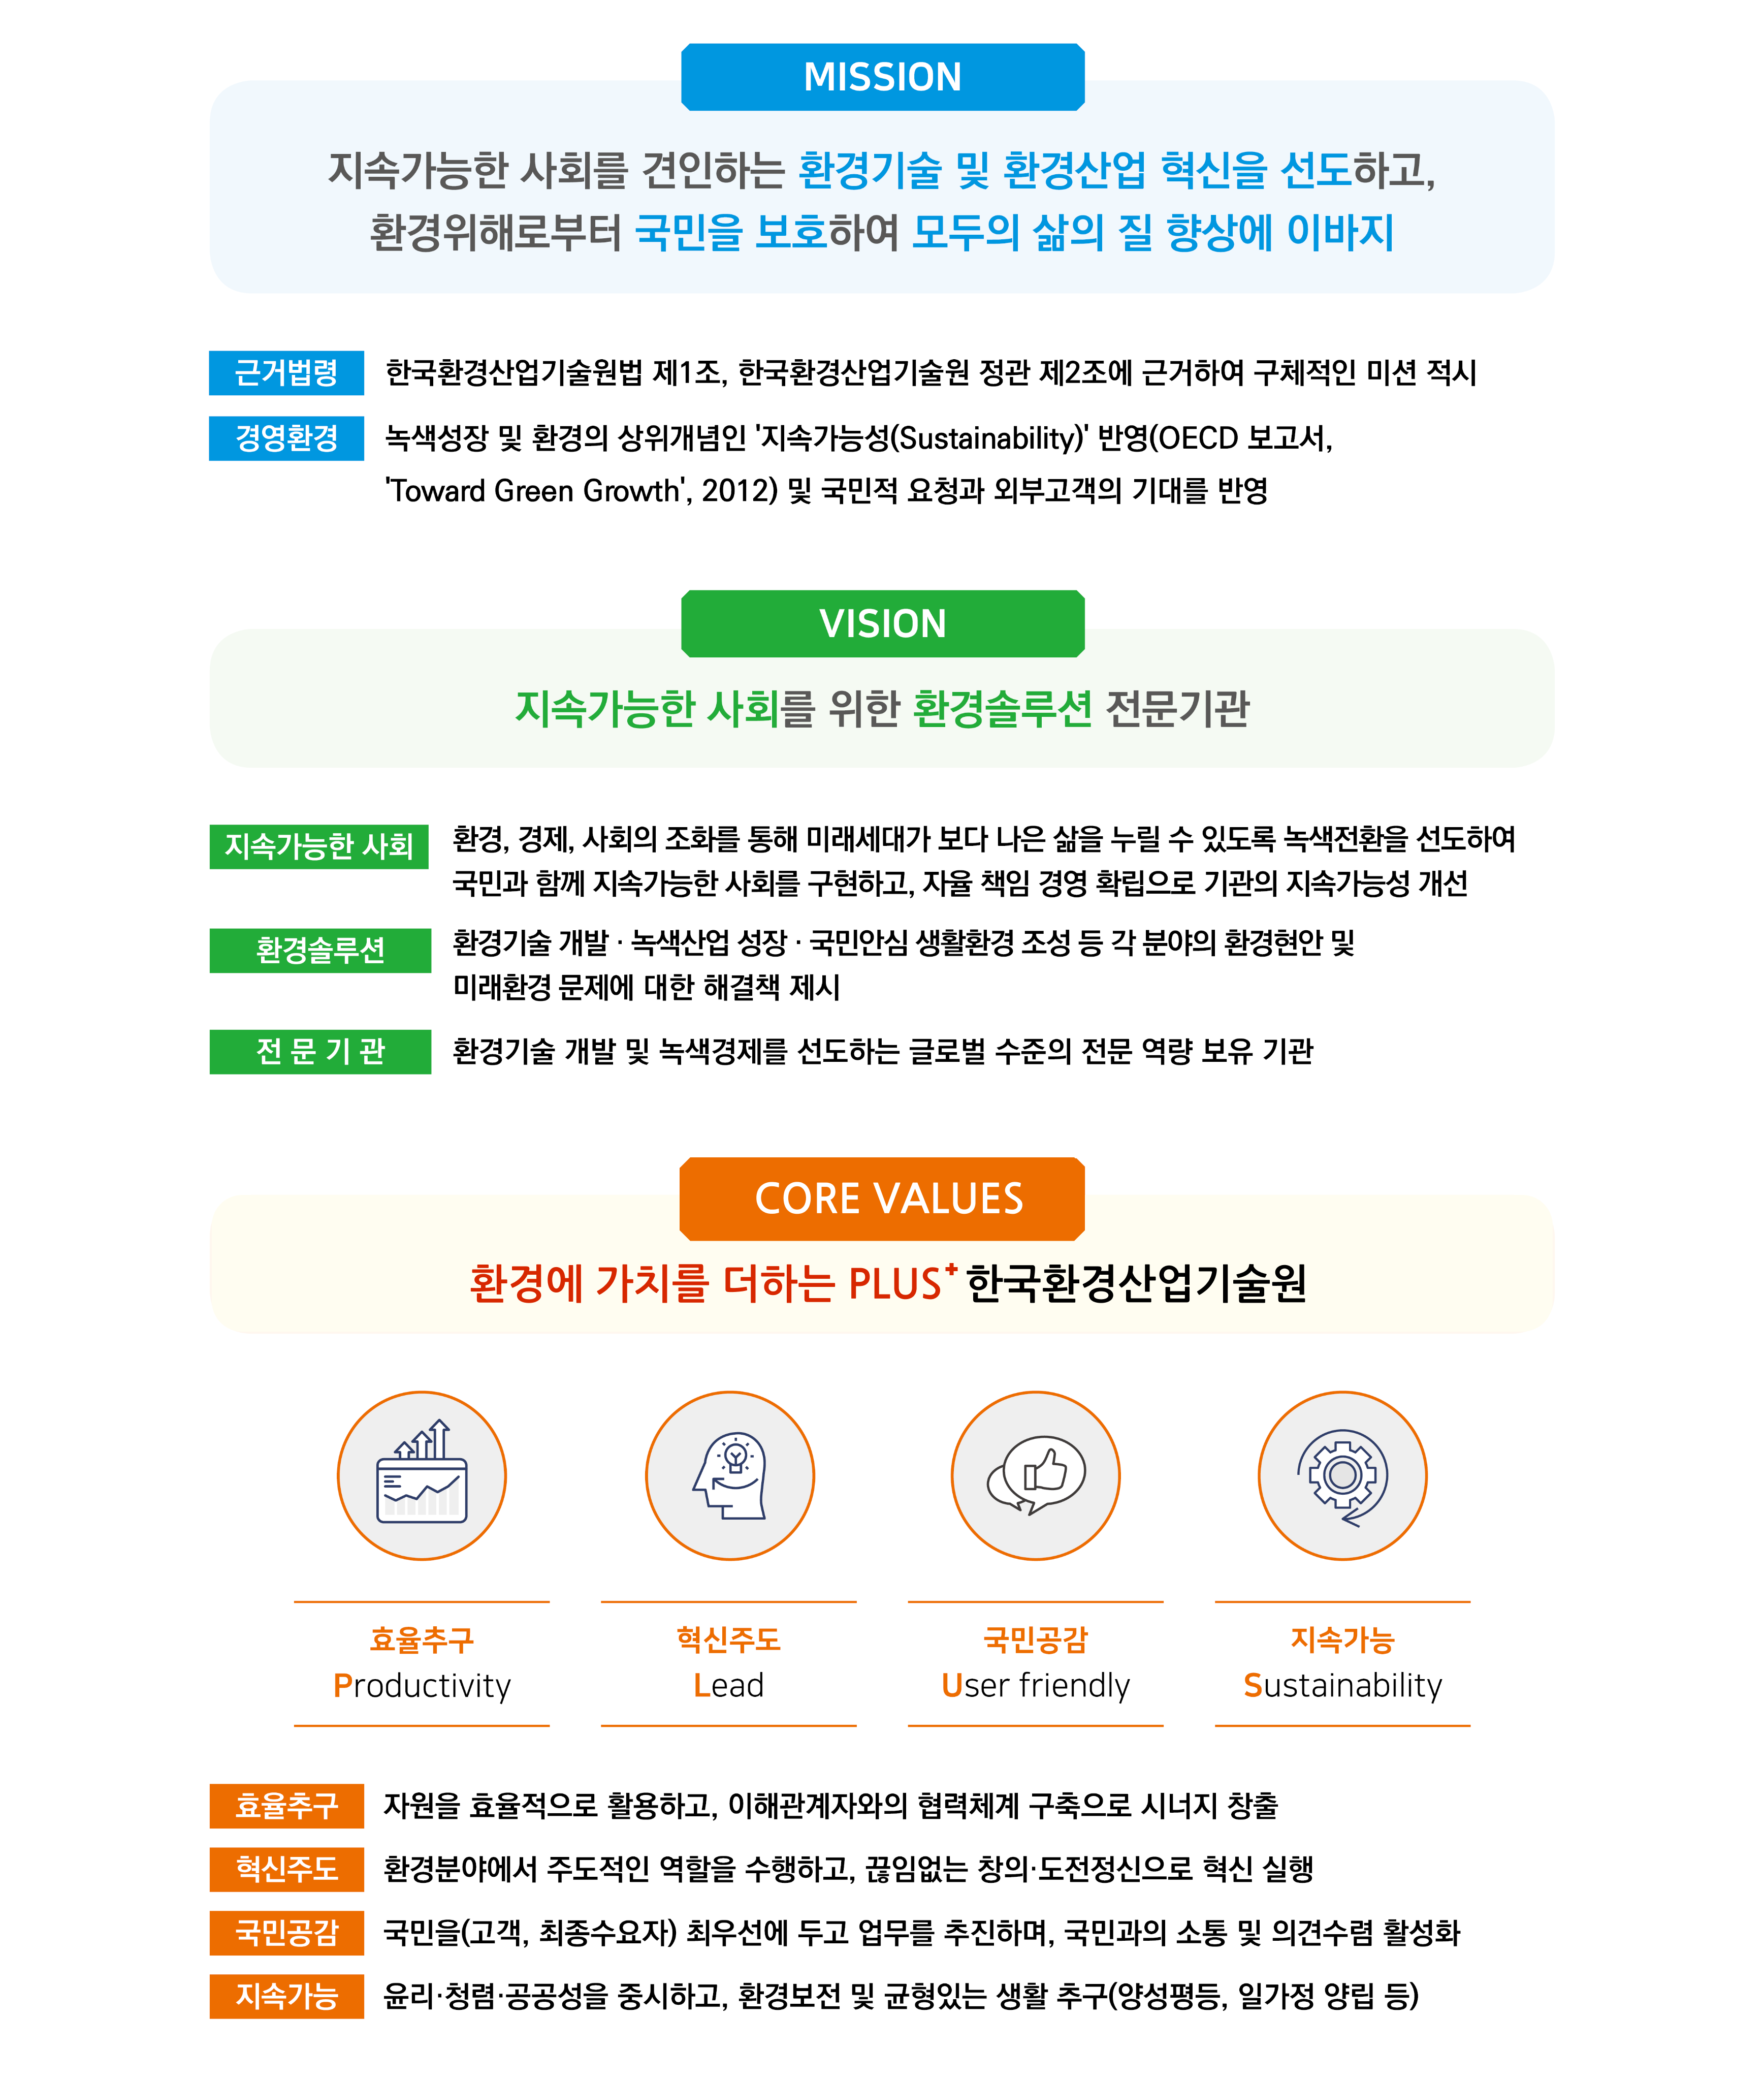 한국환경산업기술원의 미션, 비전, CORE VALUES에 대한 설명 이미지